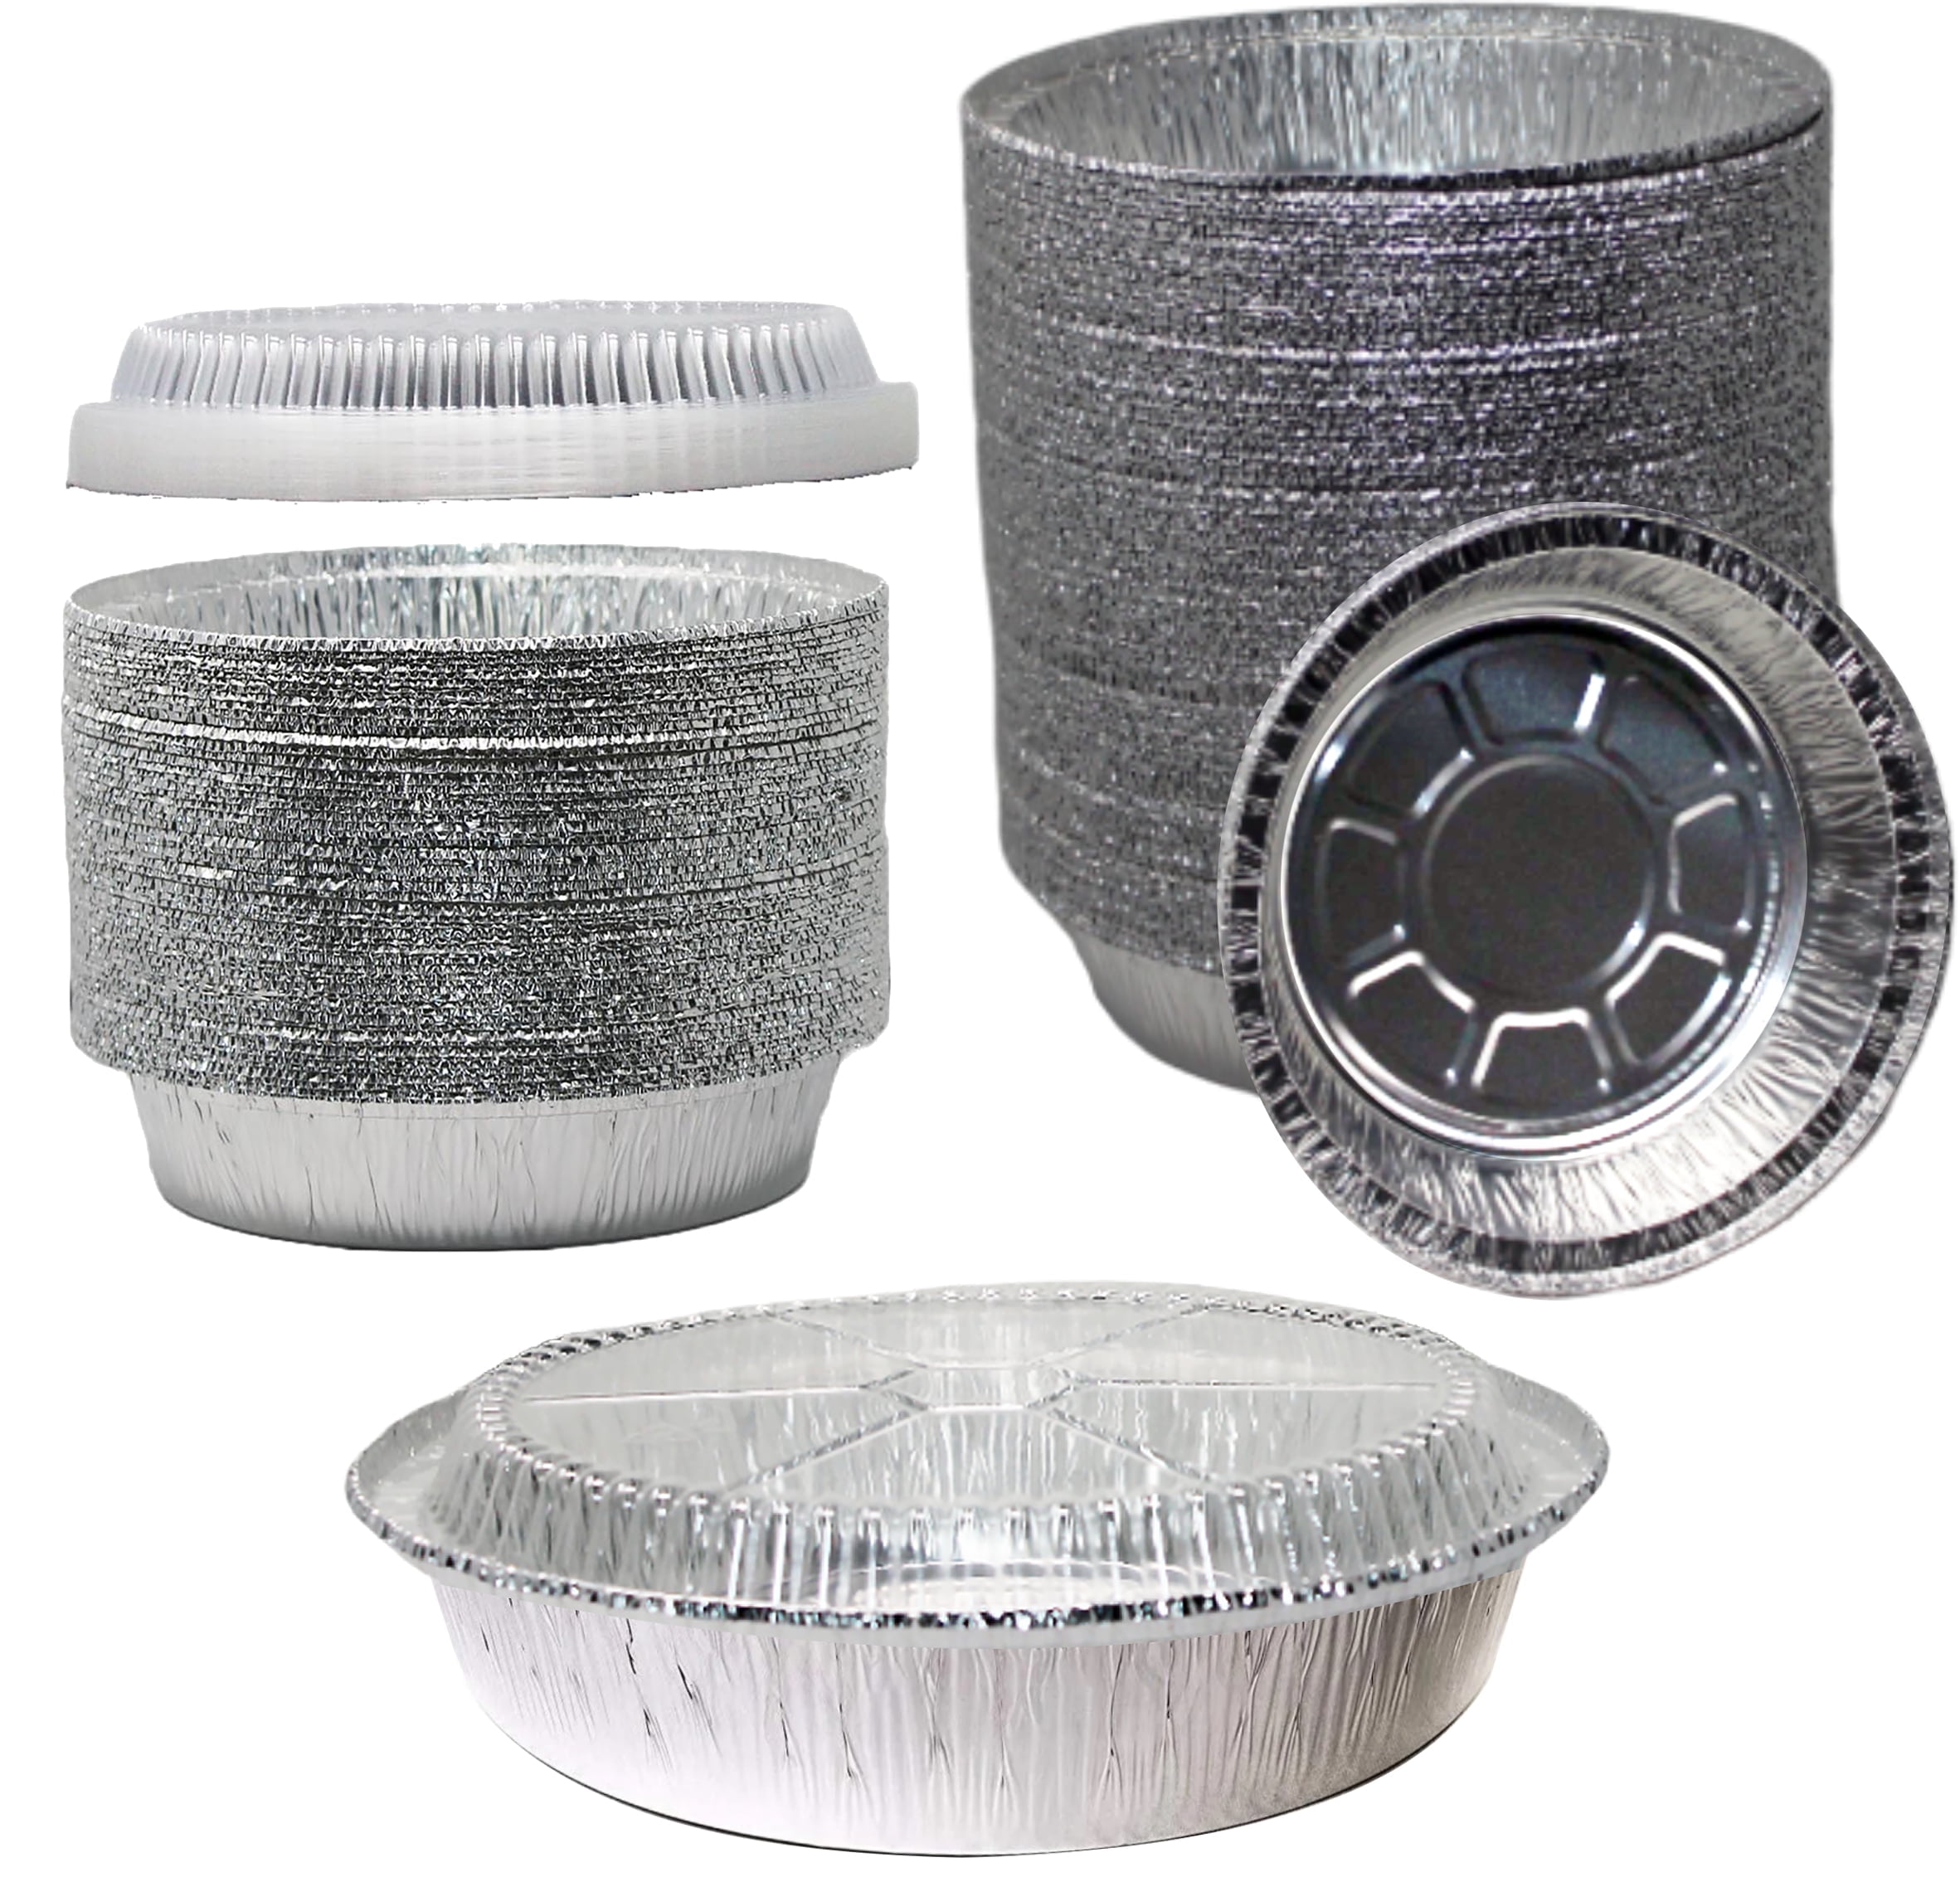  8x8 Disposable Aluminum Pans With Lids - 100 Pack Foil